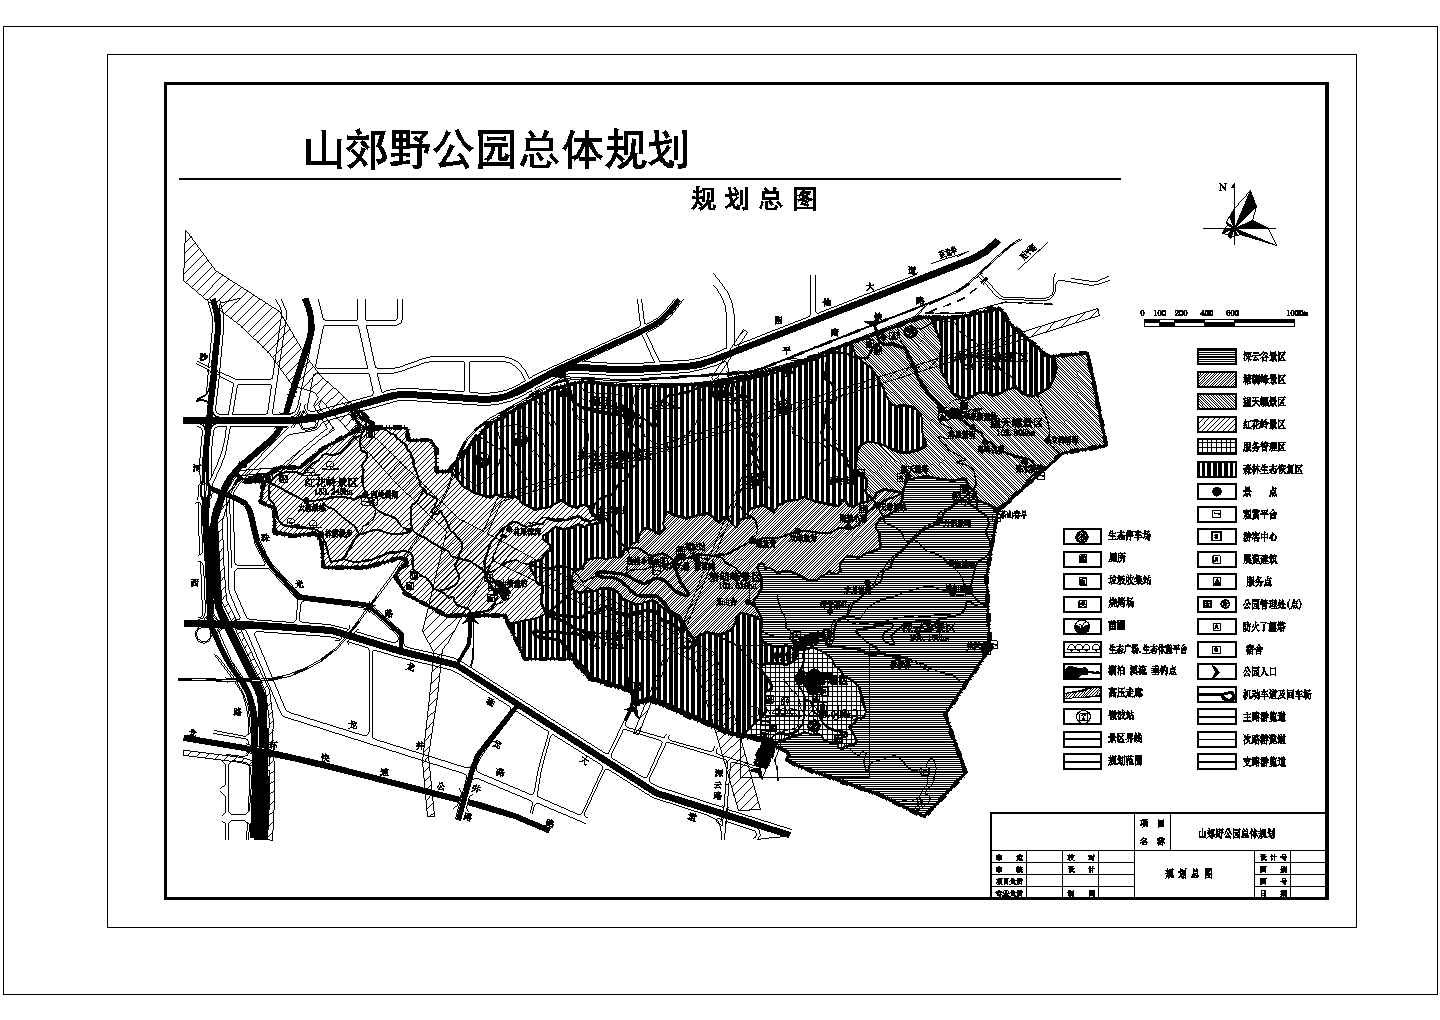 【安徽】山郊野公园总体规划设计图